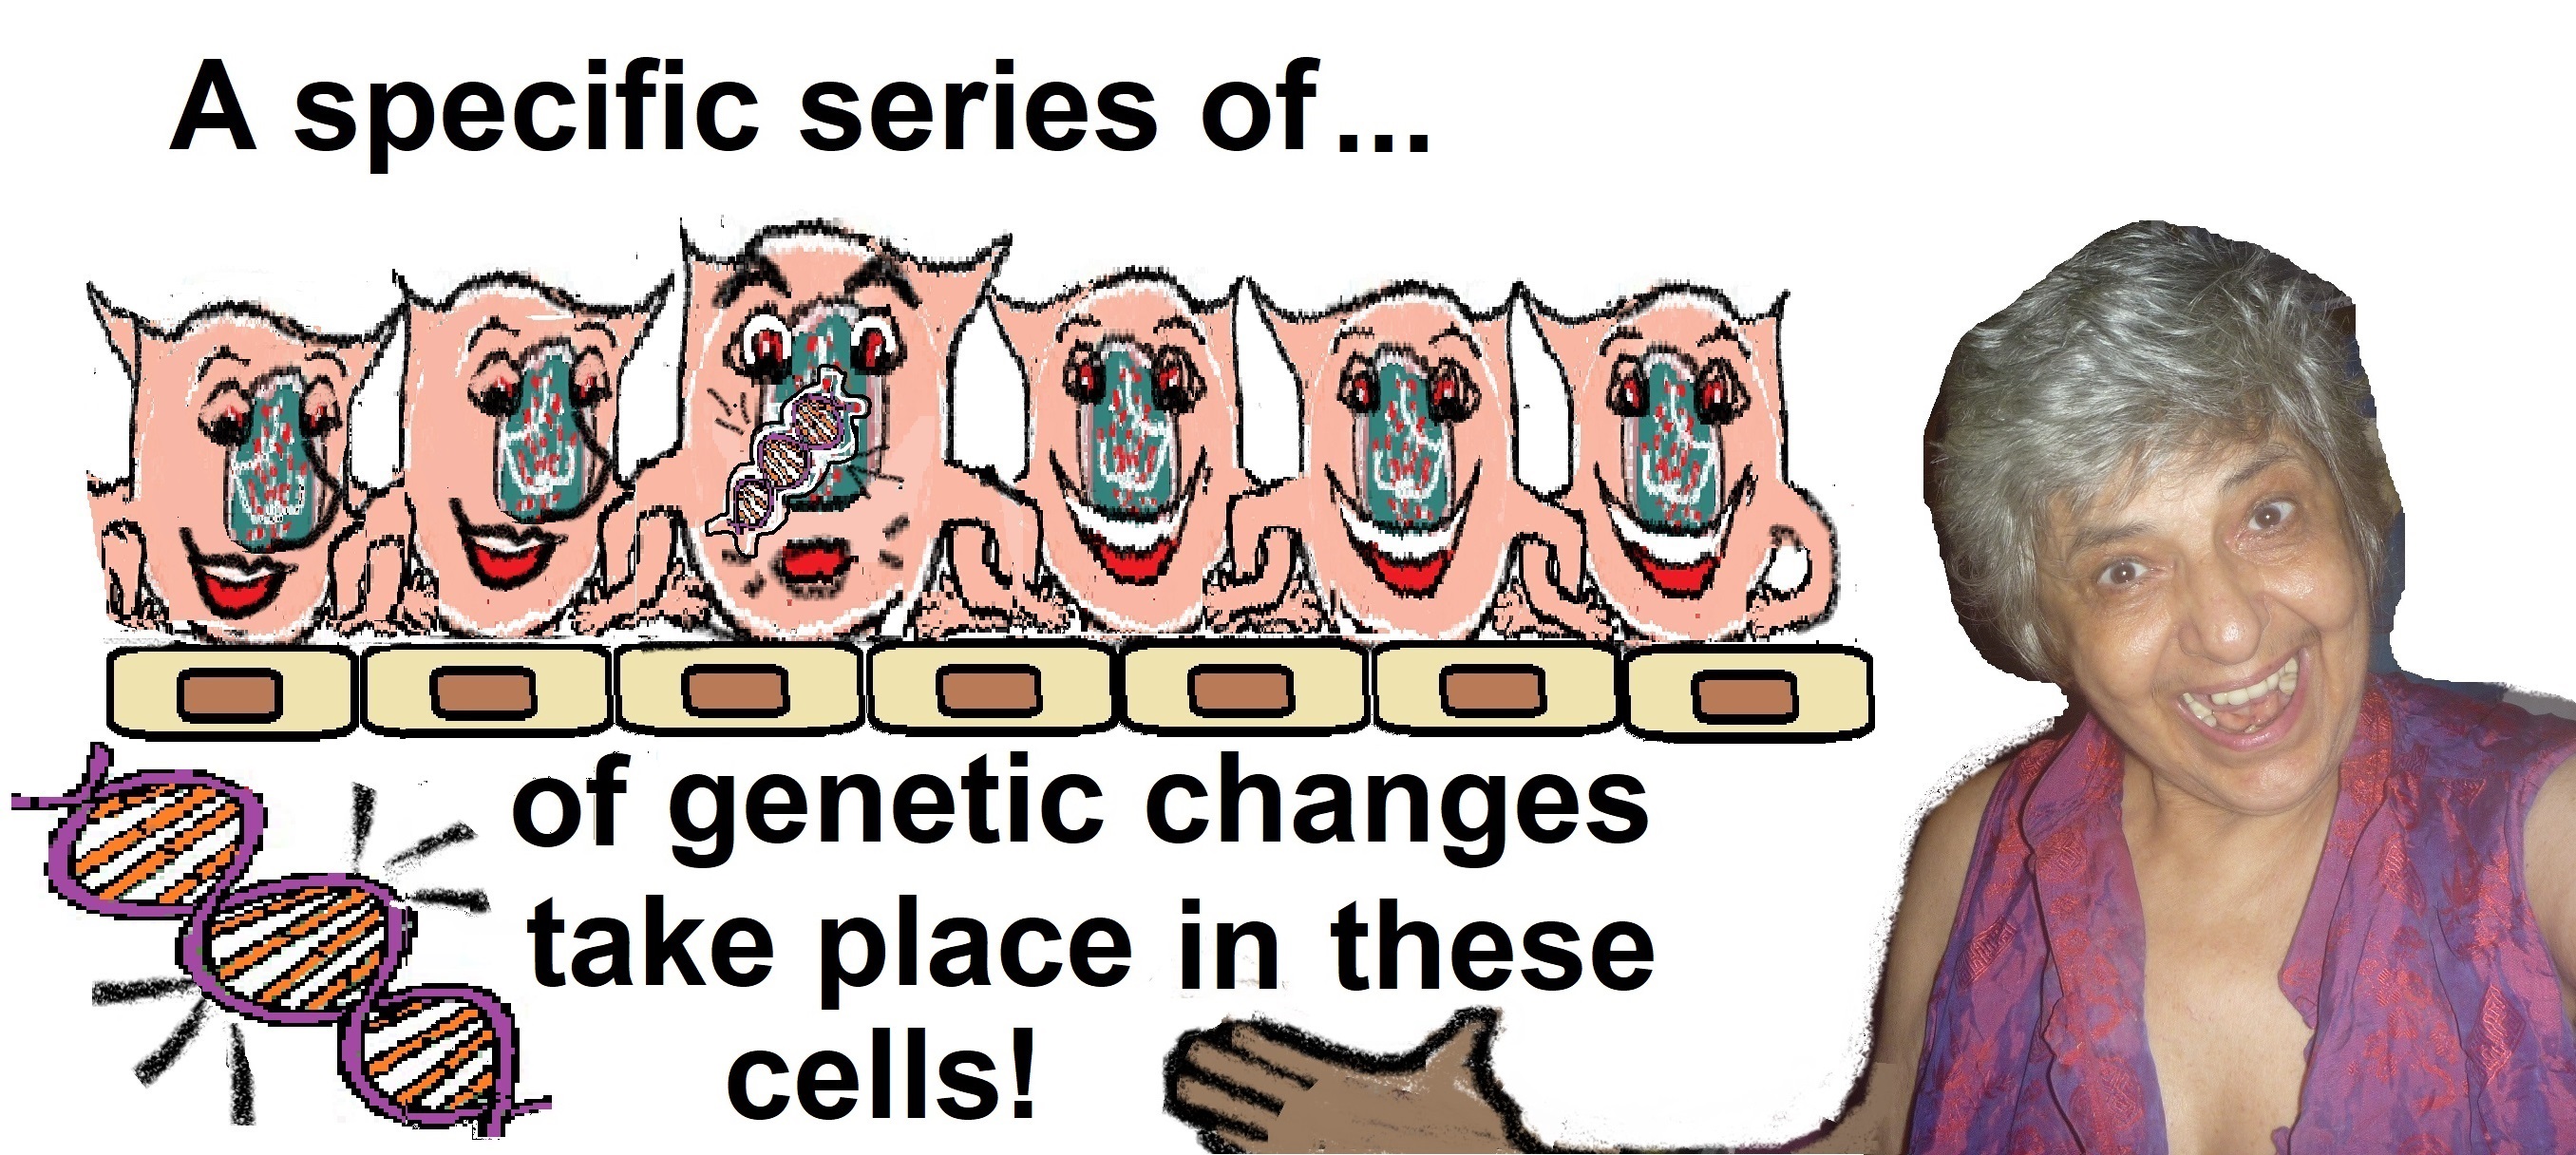 me yeah epigenetic changes3a